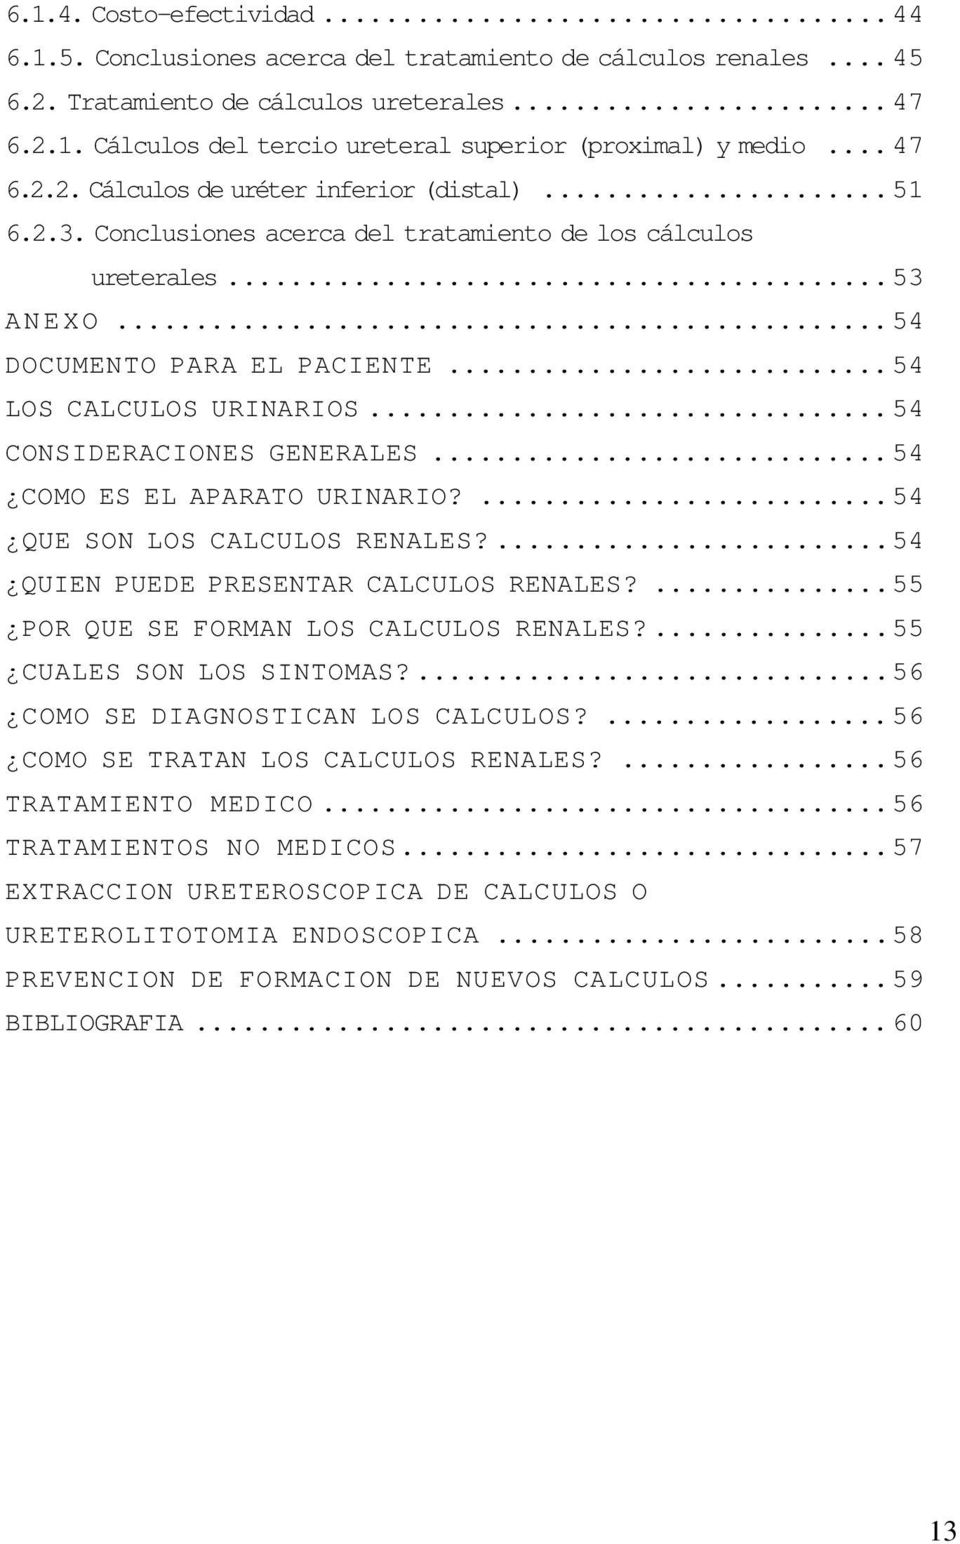 .. 54 CONSIDERACIONES GENERALES... 54 COMO ES EL APARATO URINARIO?...54 QUE SON LOS CALCULOS RENALES?...54 QUIEN PUEDE PRESENTAR CALCULOS RENALES?...55 POR QUE SE FORMAN LOS CALCULOS RENALES?